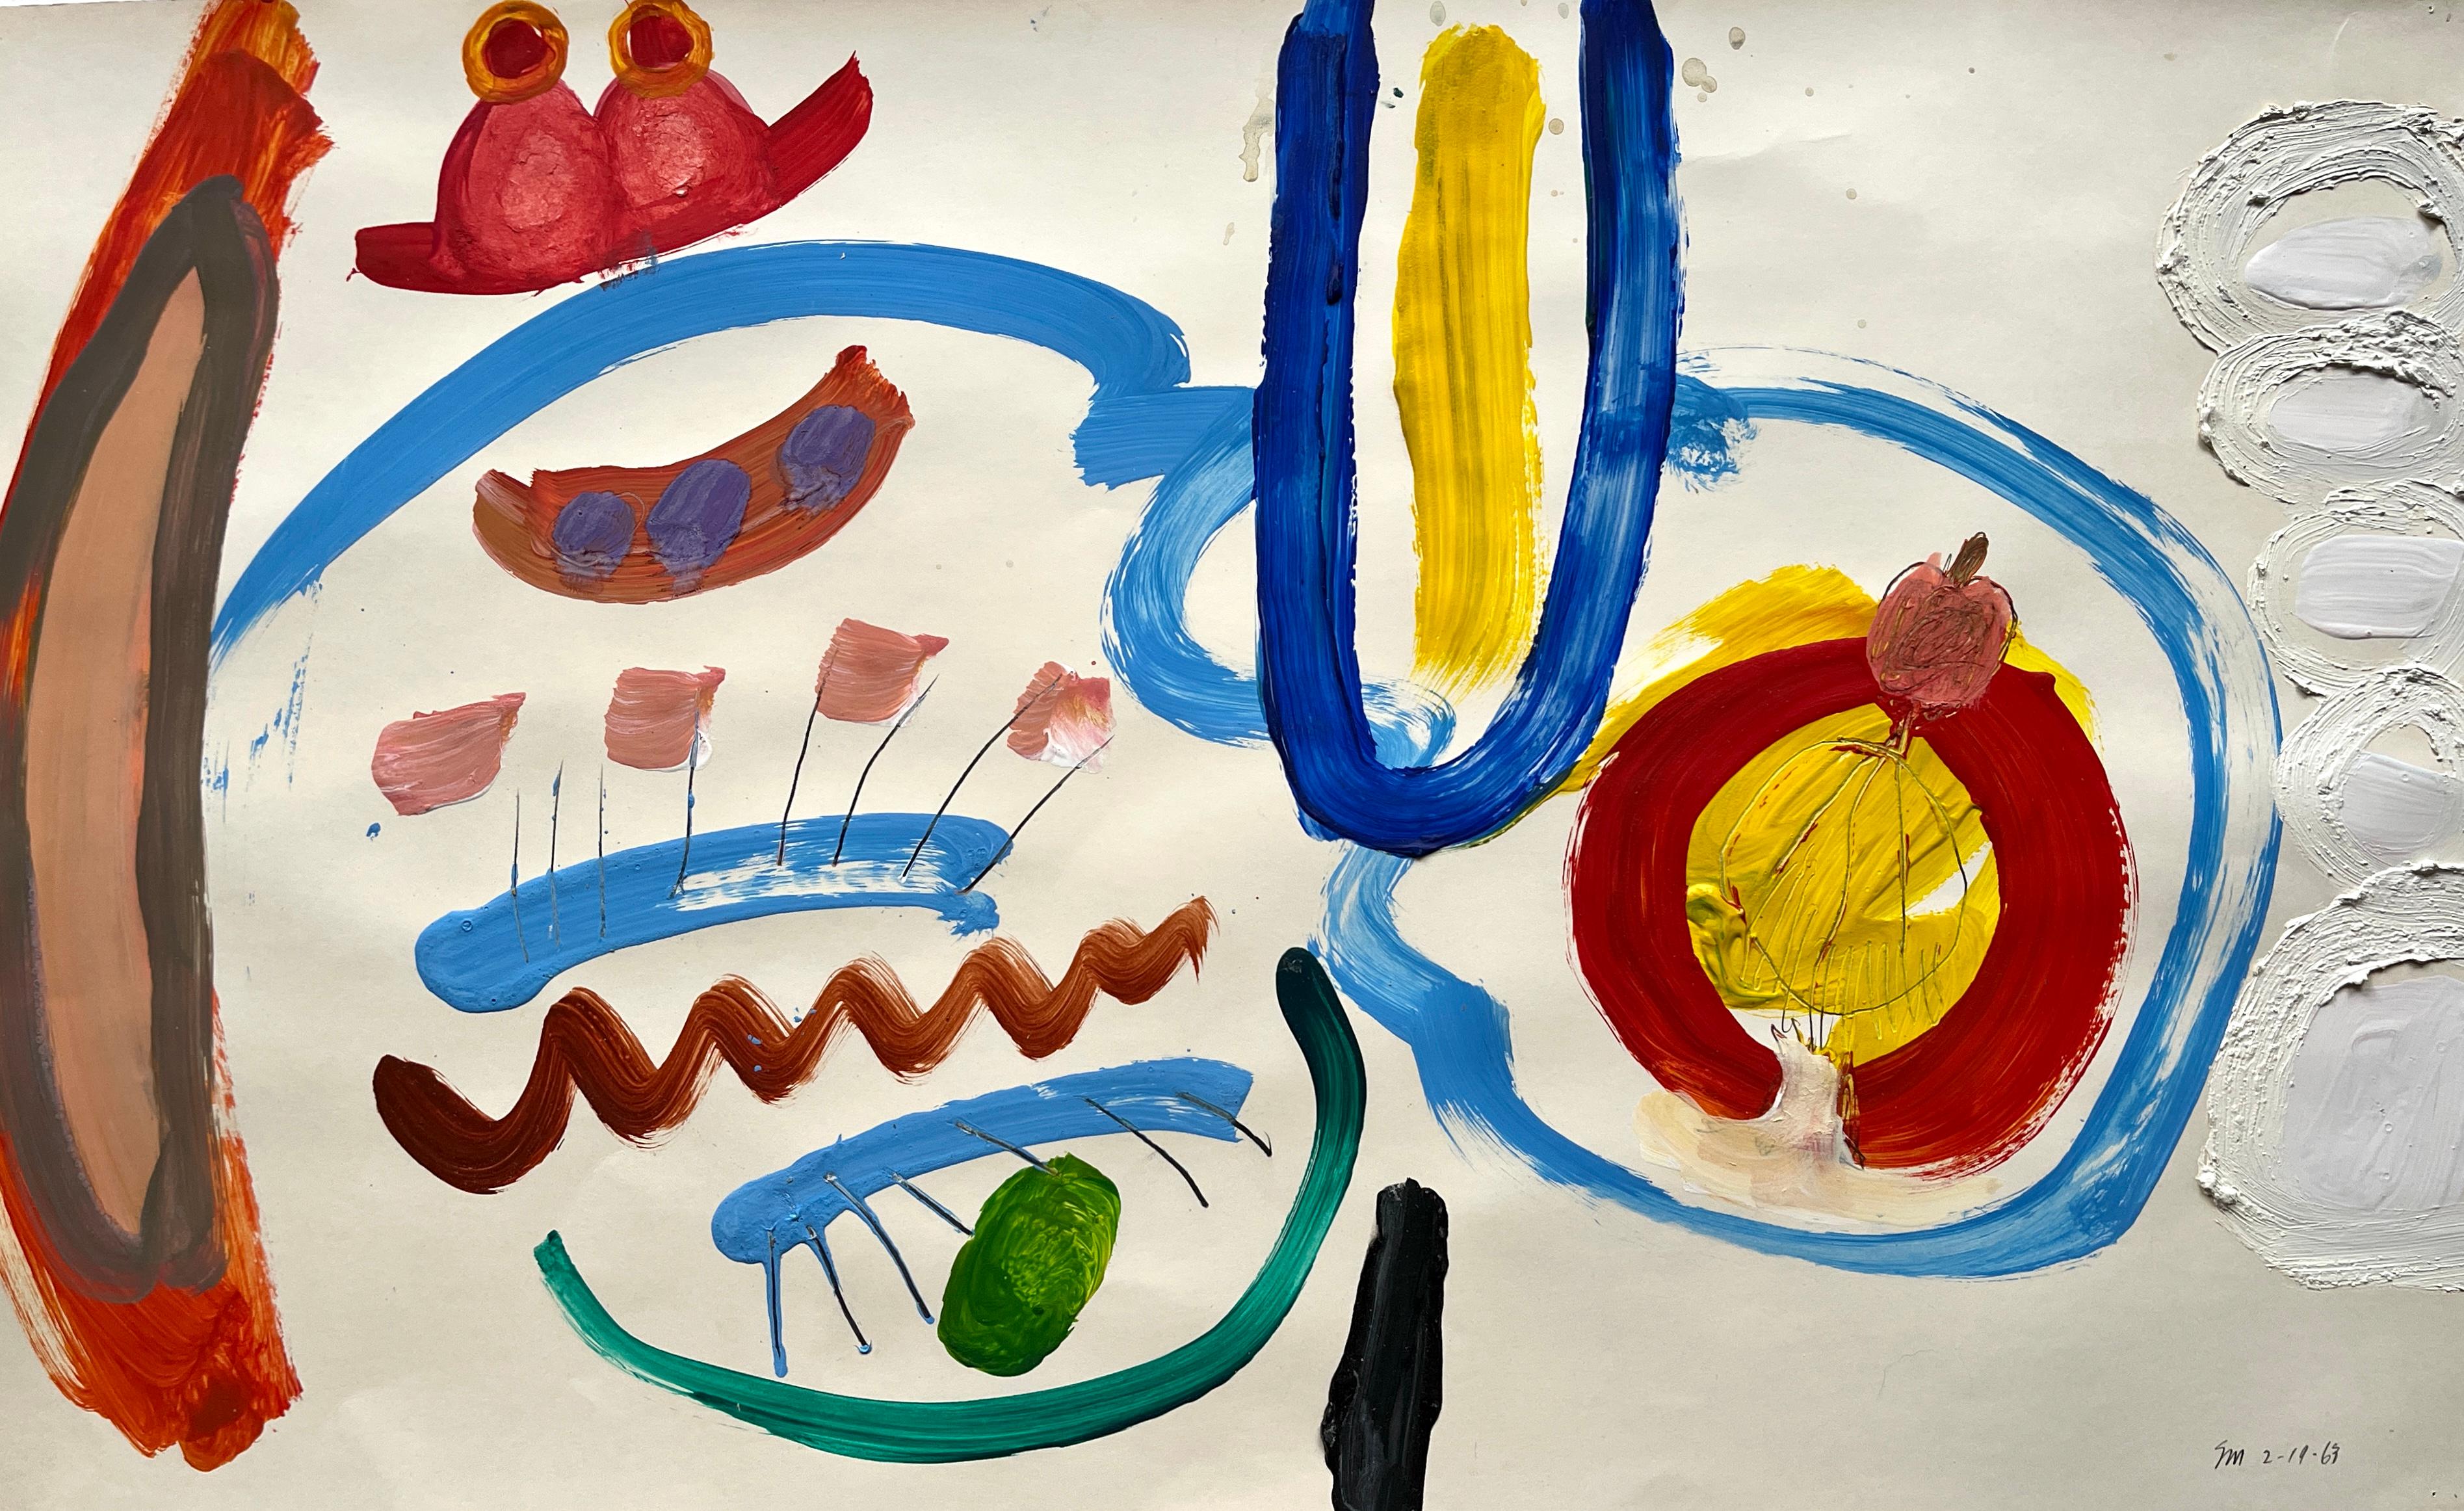 Abstract Painting Selma Moskowitz - "Flowers and Bugs", peinture abstraite de l'artiste féminine de 1963 en Californie